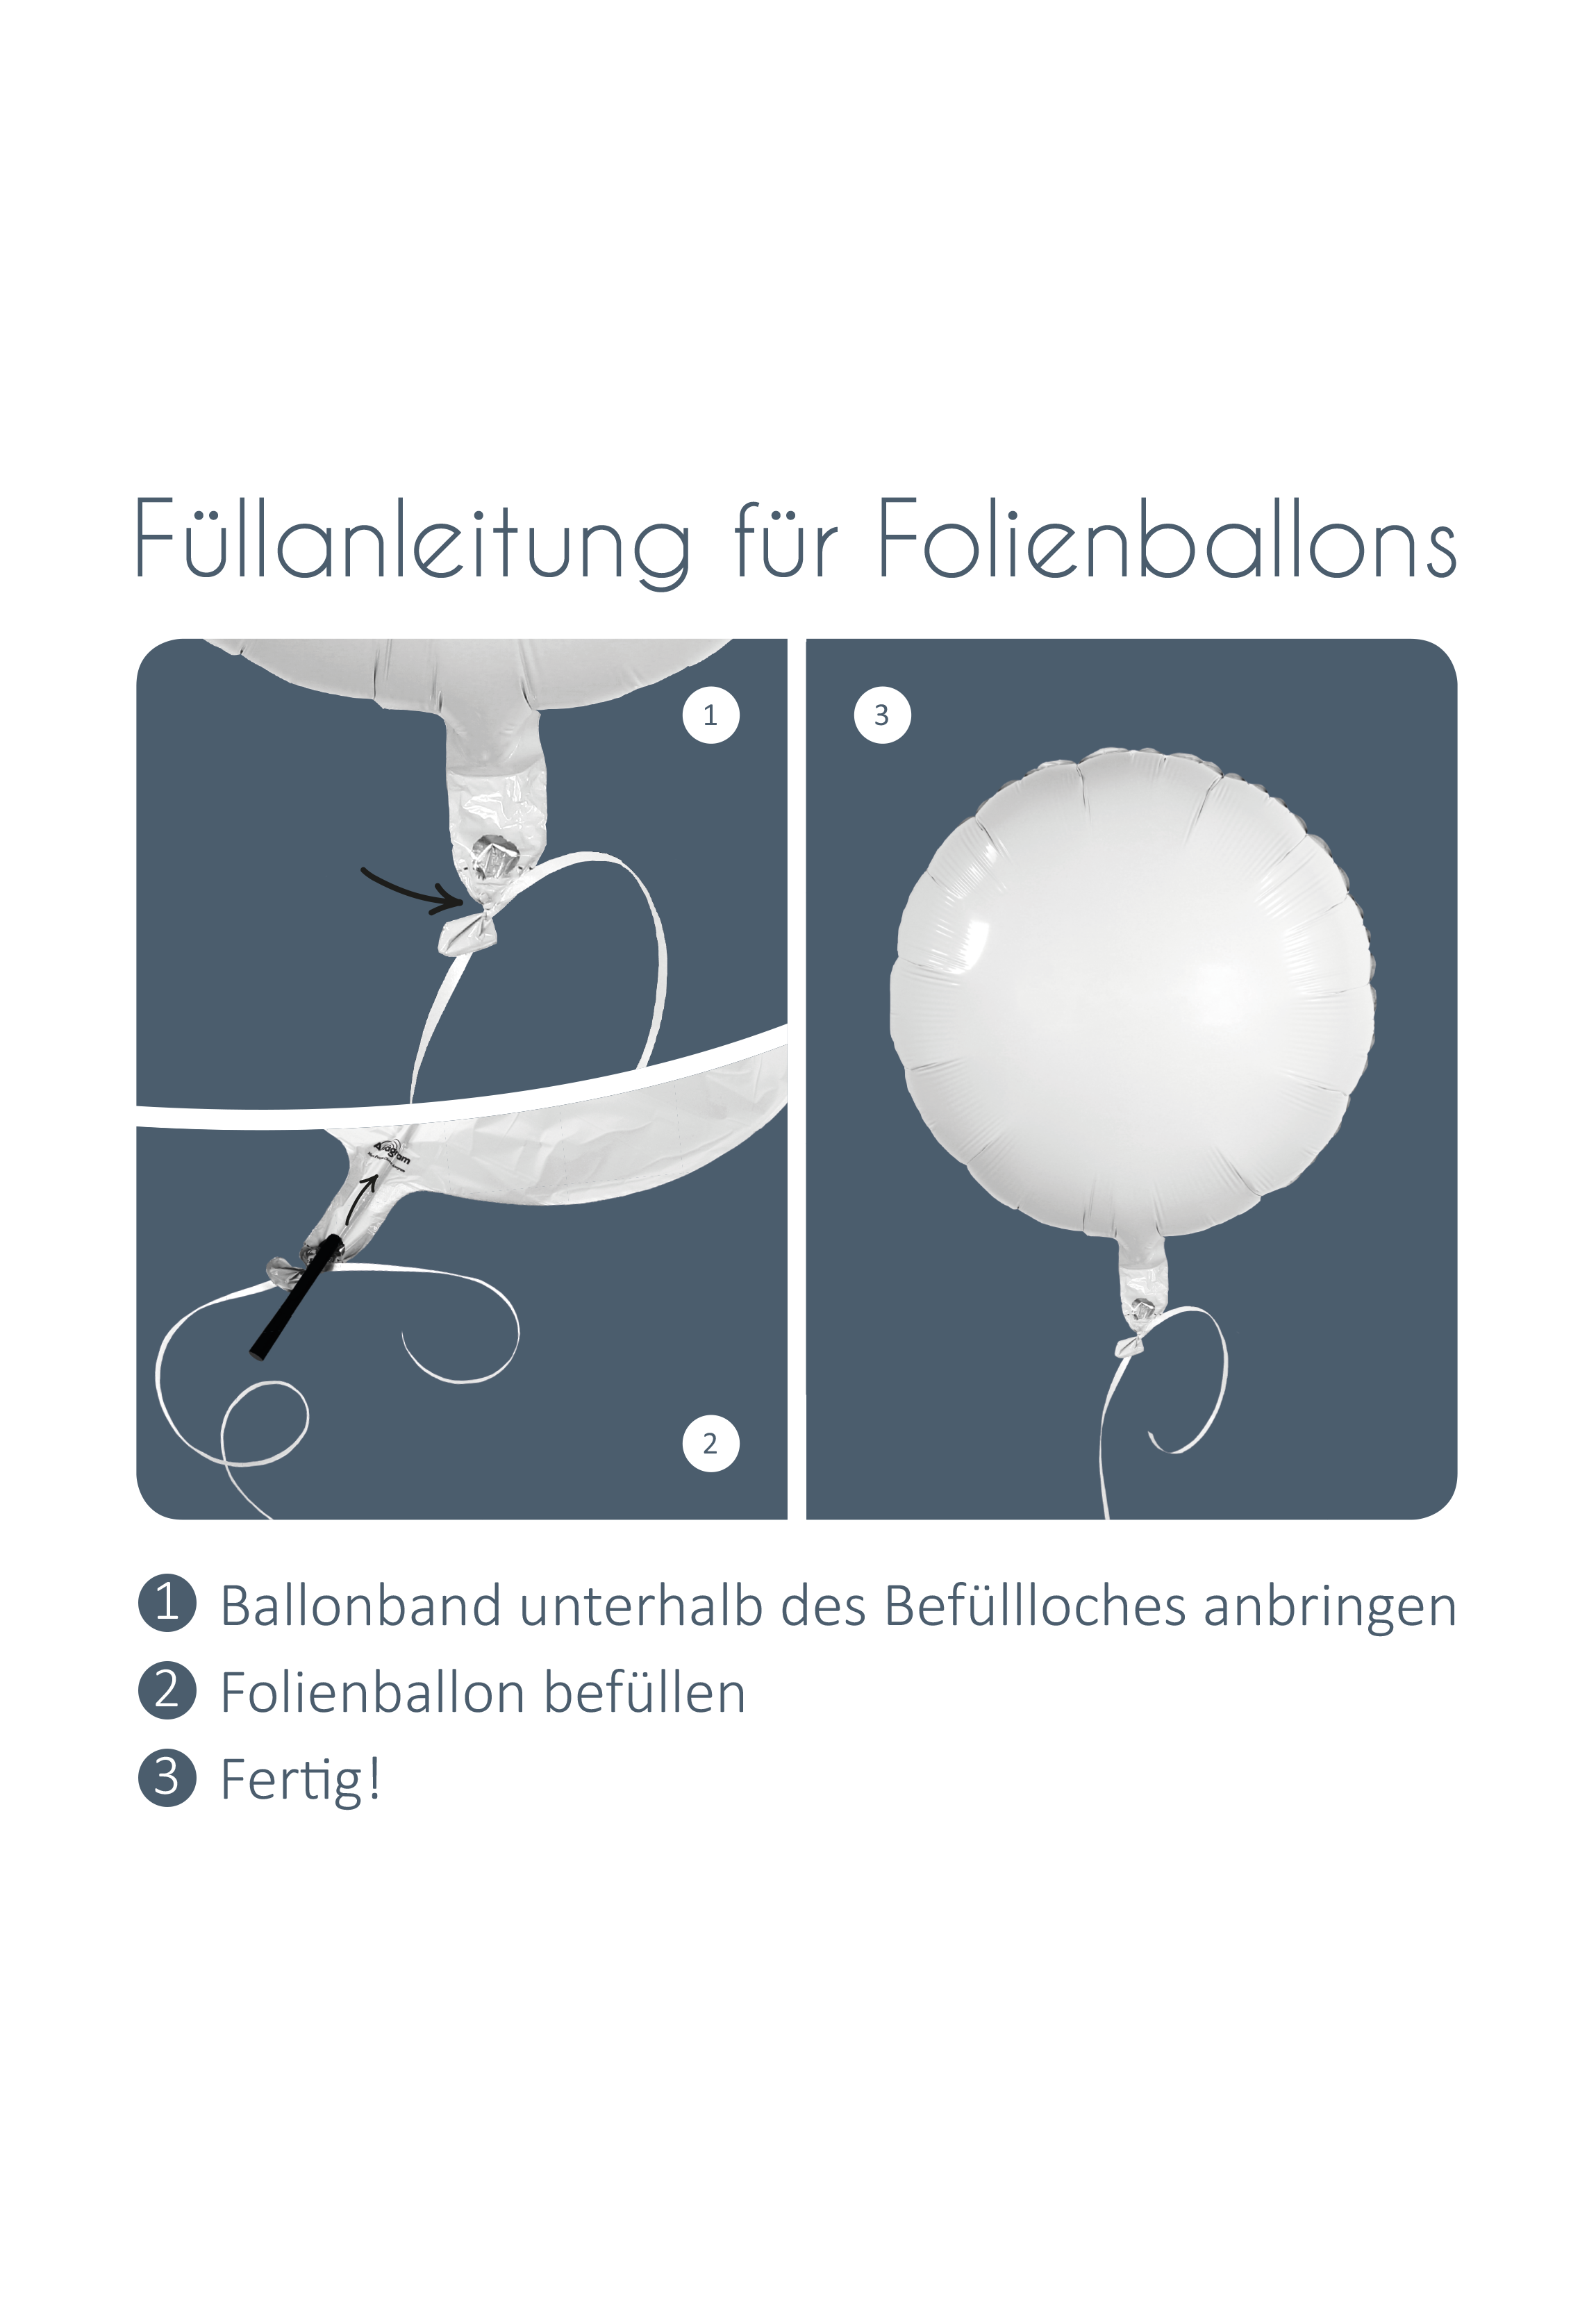 Luftballon personalisiert - Rund weiß Folienballon